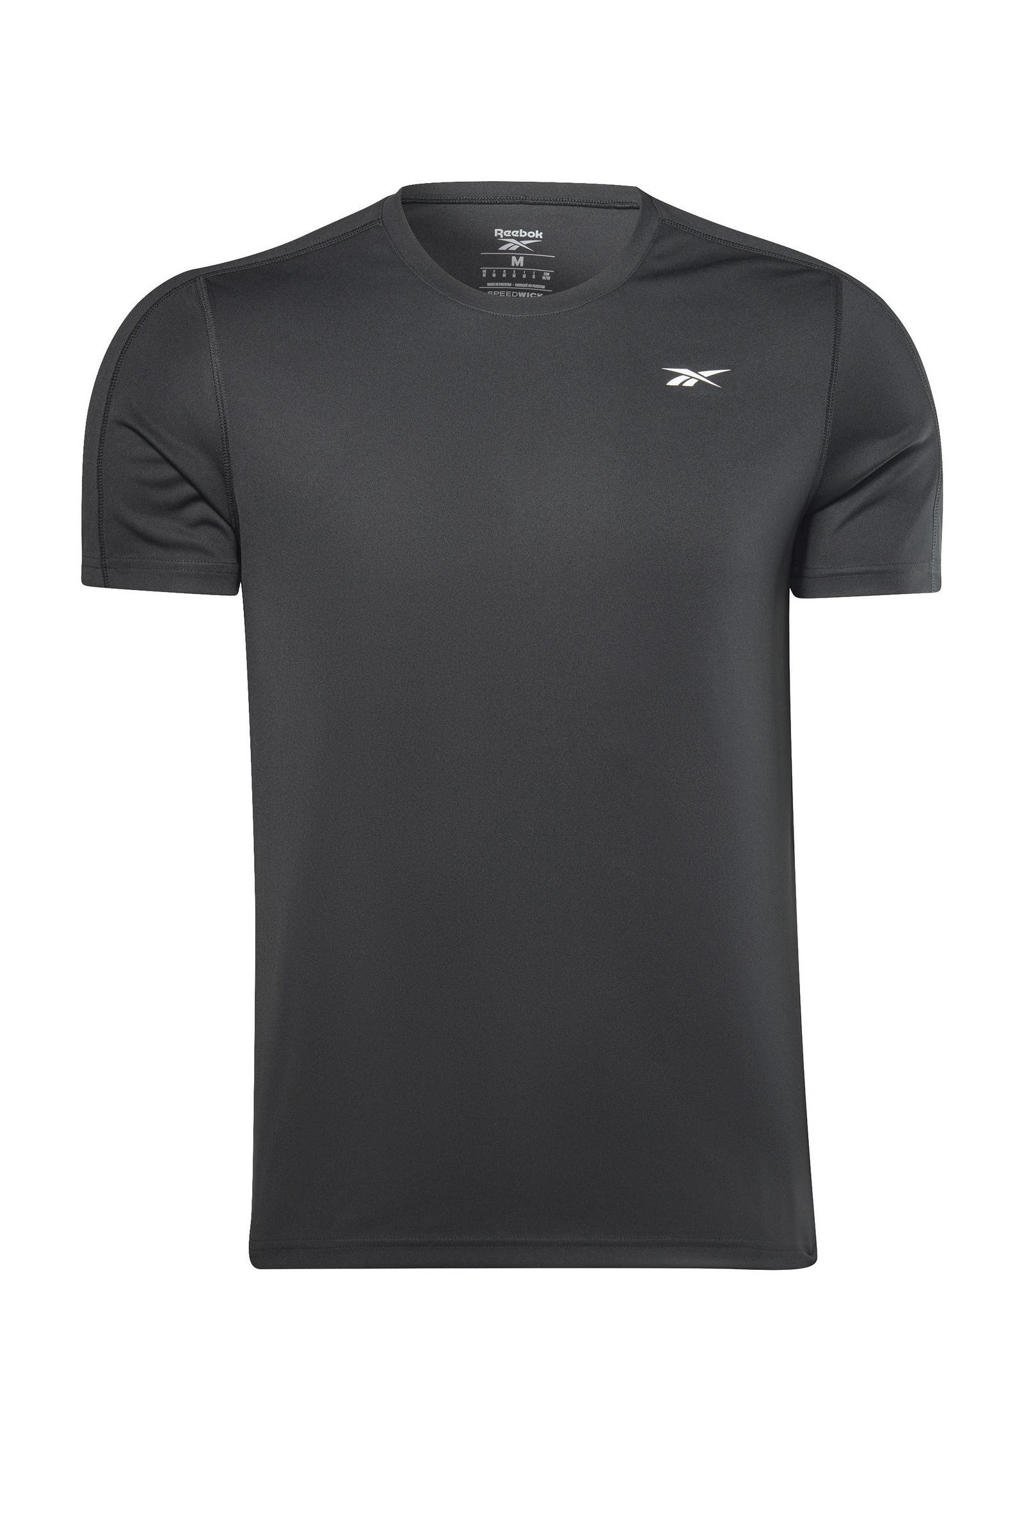 Zwarte heren Reebok Training sport T-shirt van gerecycled polyester met logo dessin, korte mouwen en ronde hals